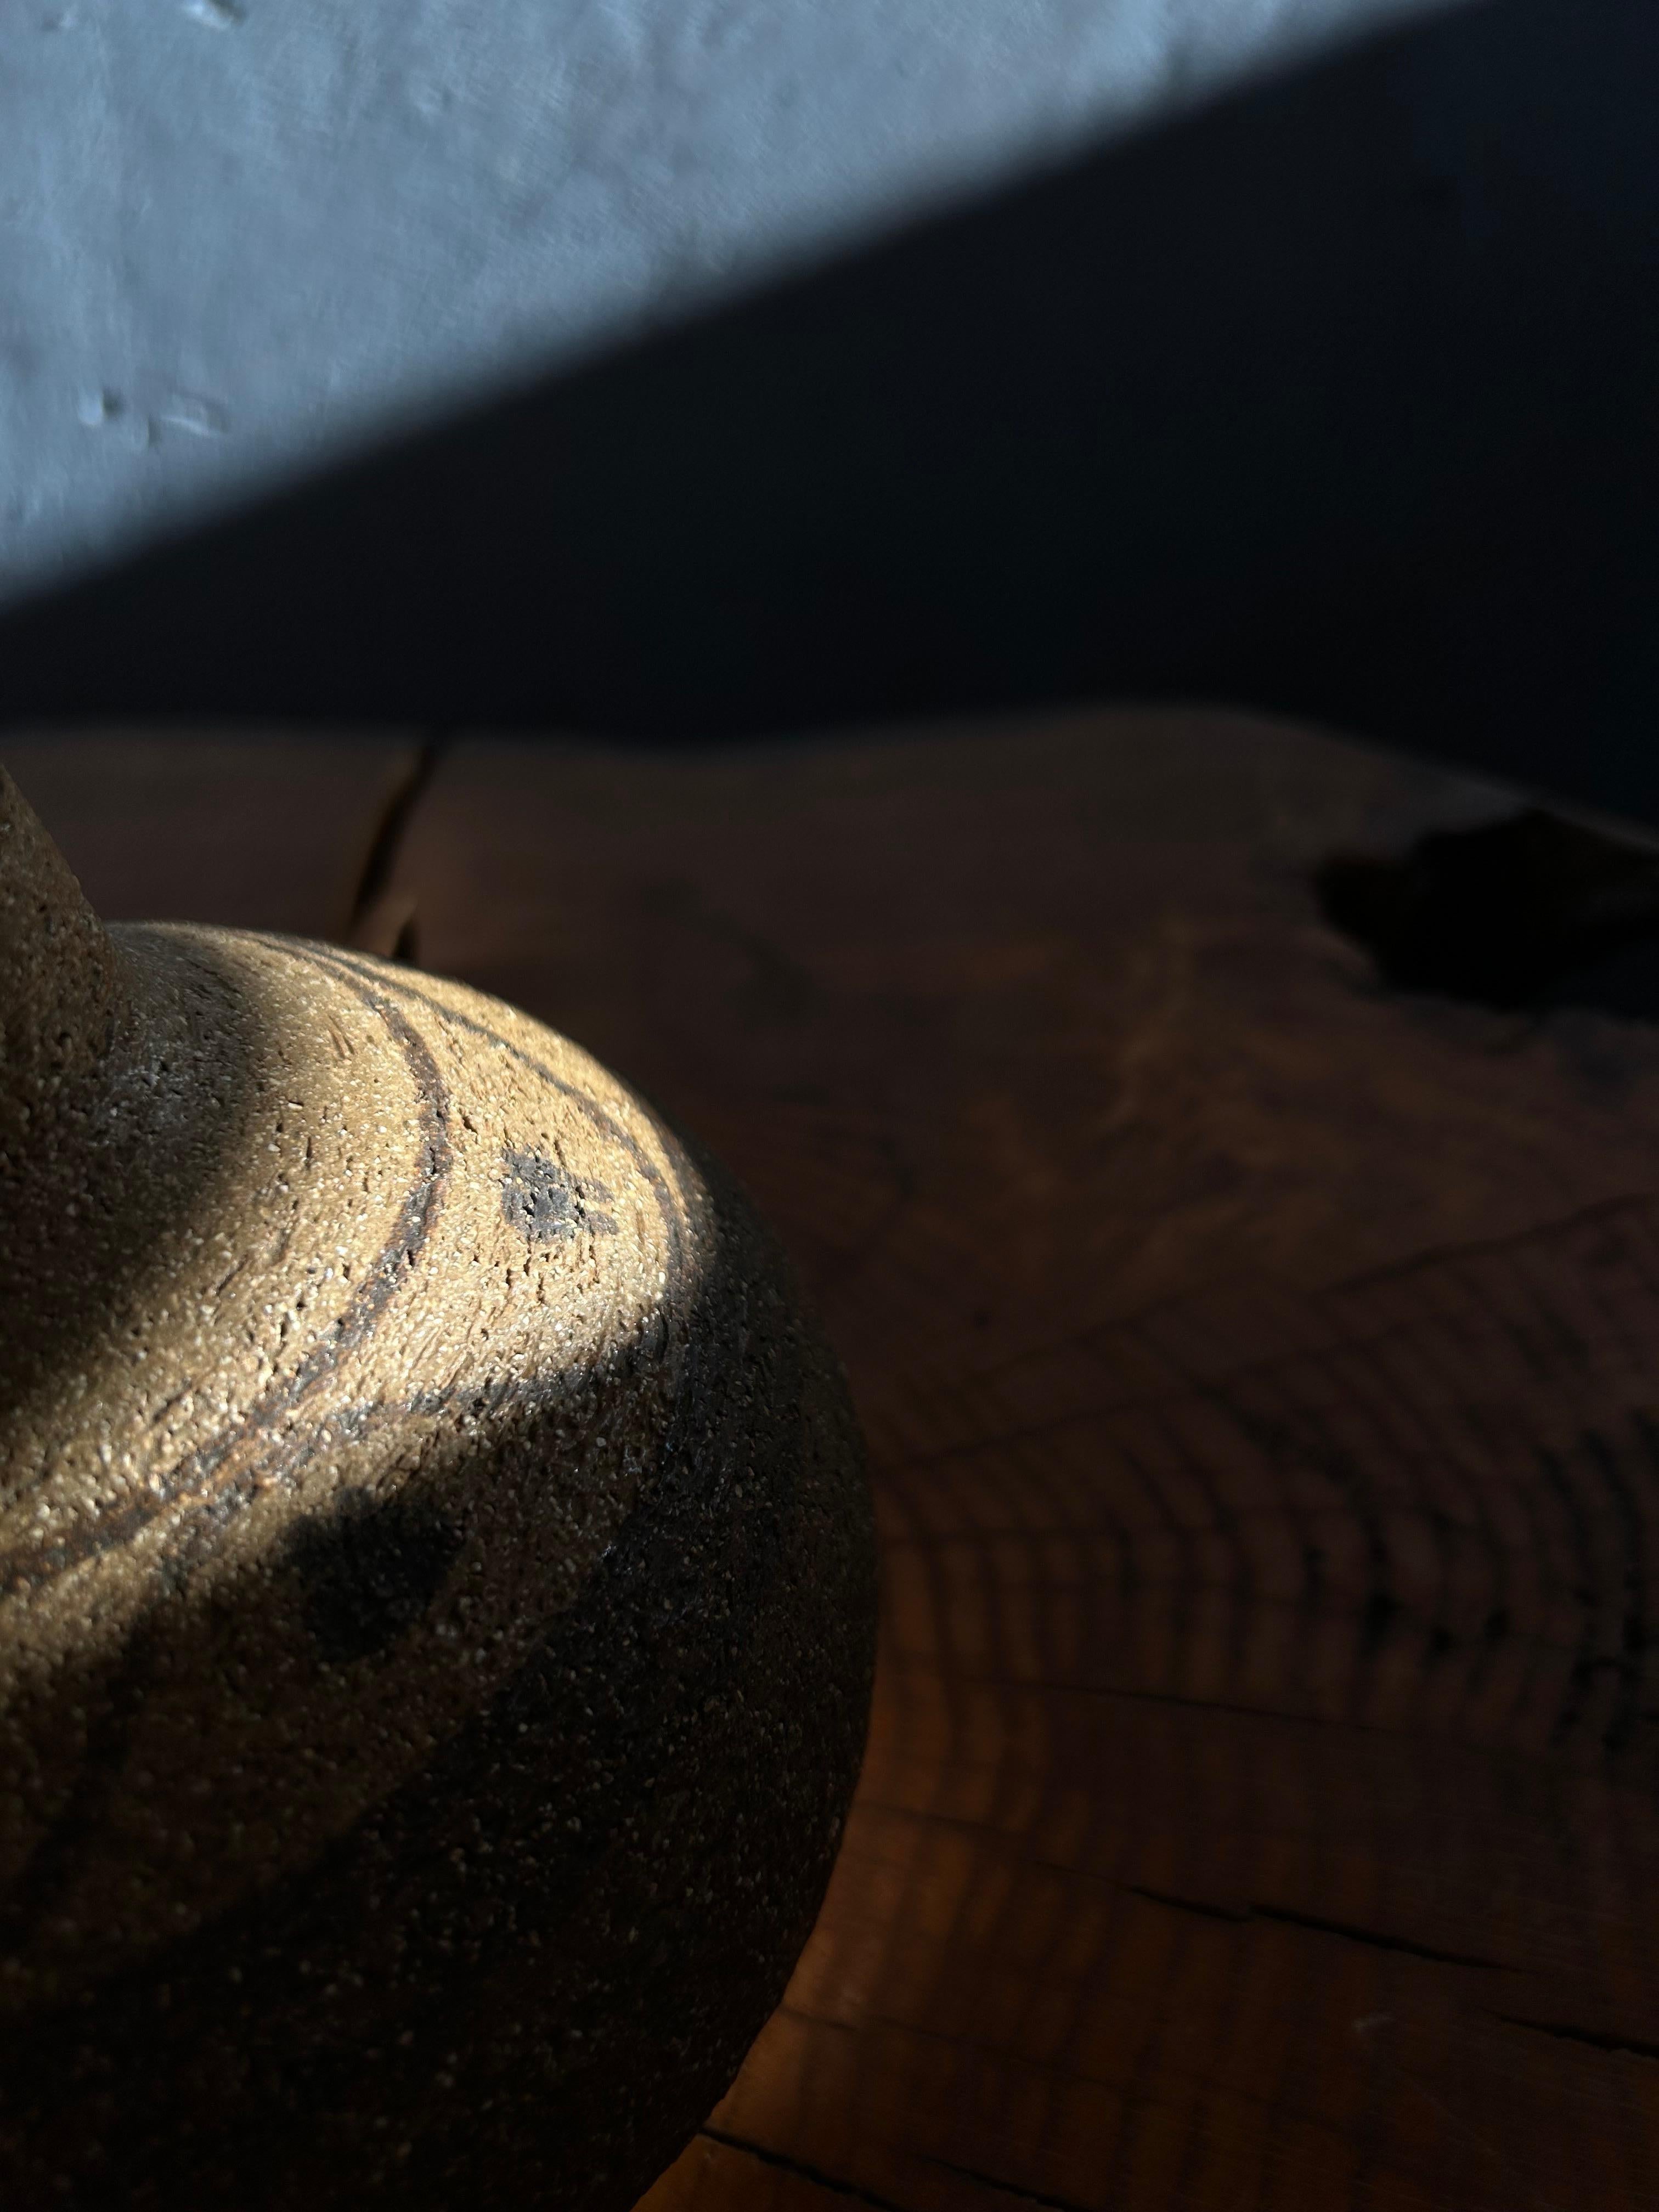 Dekorative Søholm-Tischlampe, hergestellt auf der kleinen dänischen Insel Bornholm, die zwischen Dänemark und Schweden liegt.
Die Lampe ist teilweise glasiert und andere Teile der Lampe sind unglasiert, die ein großes Detail, um die Lampe mit dem